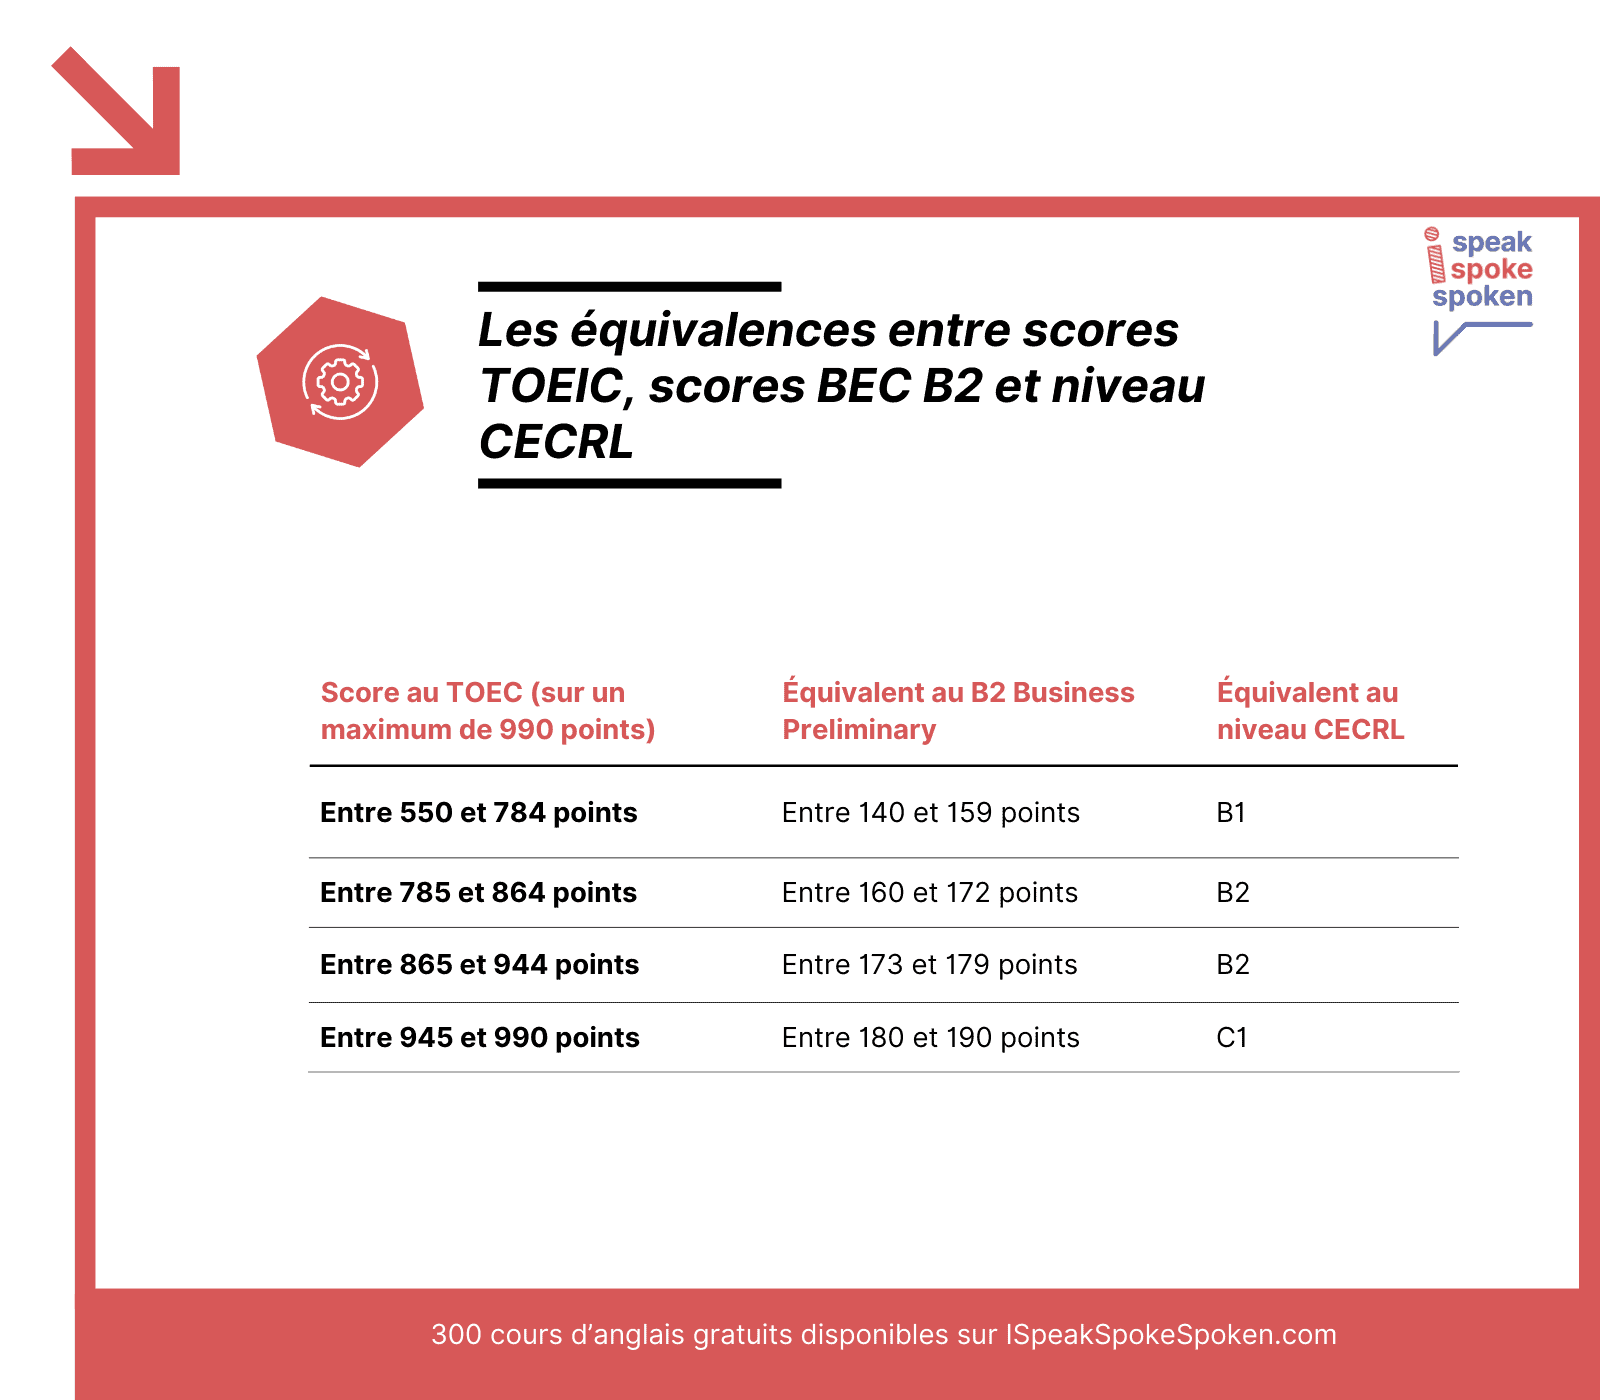 Les équivalences entre scores TOEIC, scores BEC B2 et niveaux CECRL